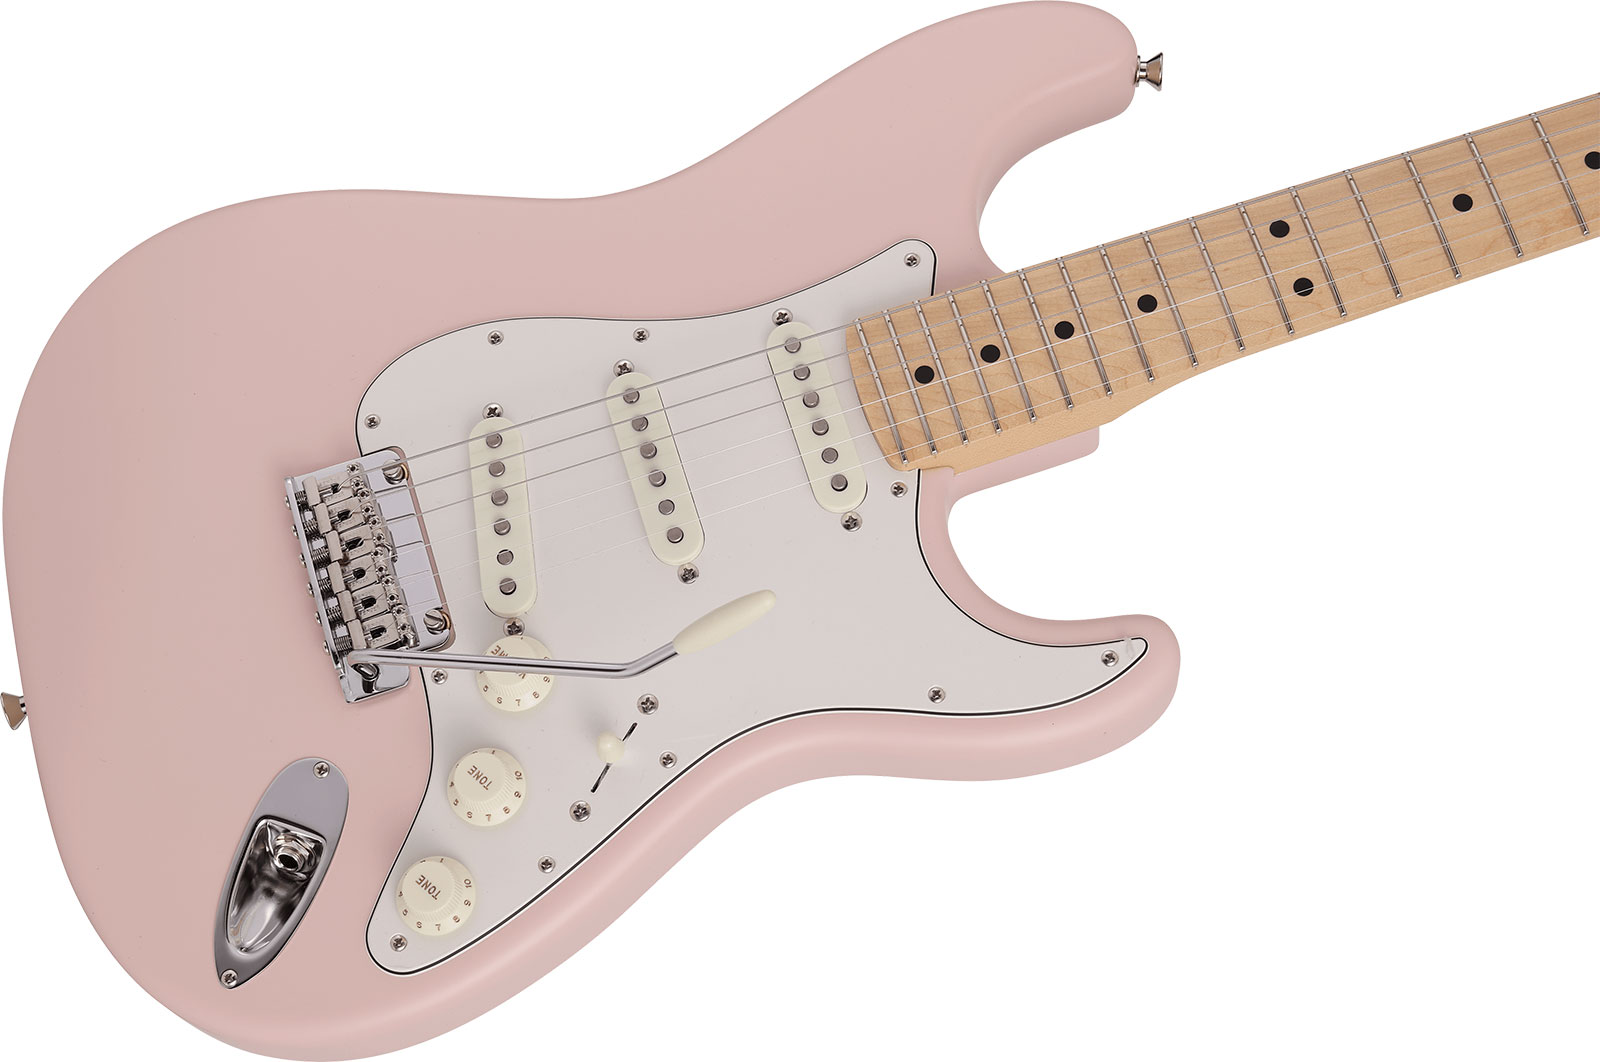 Fender Strat Junior Mij Jap 3s Trem Rw - Satin Shell Pink - Elektrische gitaar voor kinderen - Variation 2